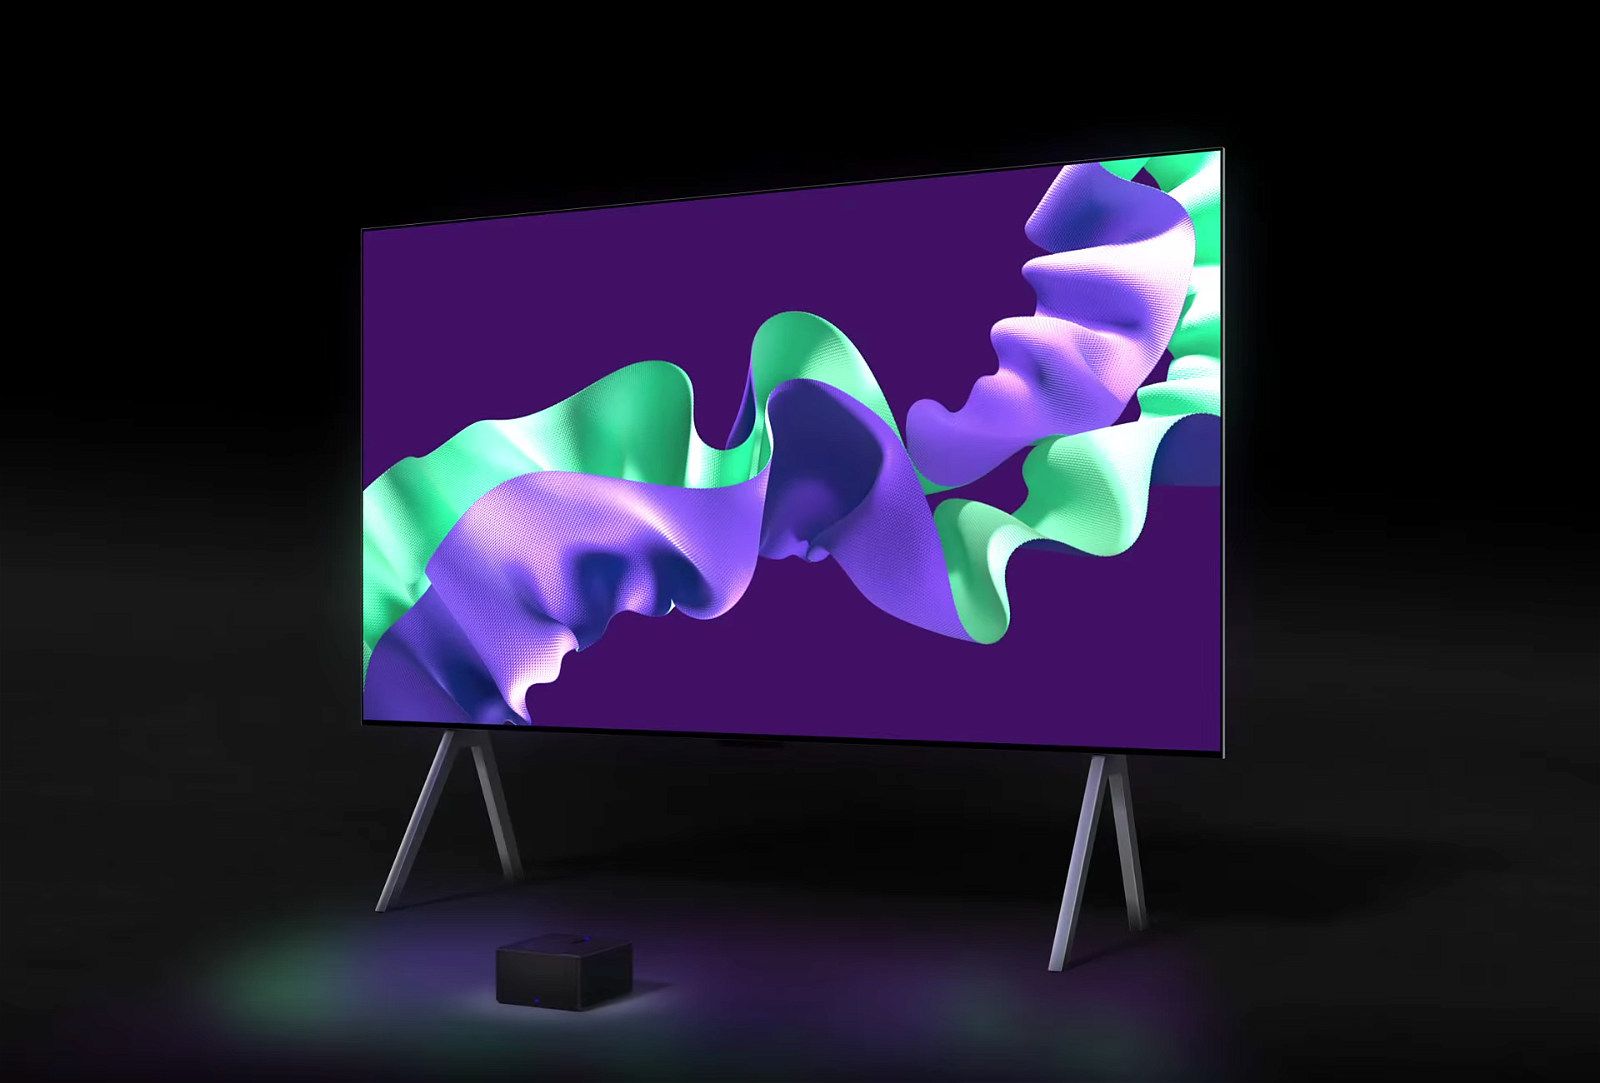 Nuevo LG OLED evo M4, el primer televisor del mundo con transmisión inalámbrica 4K a 144 Hz